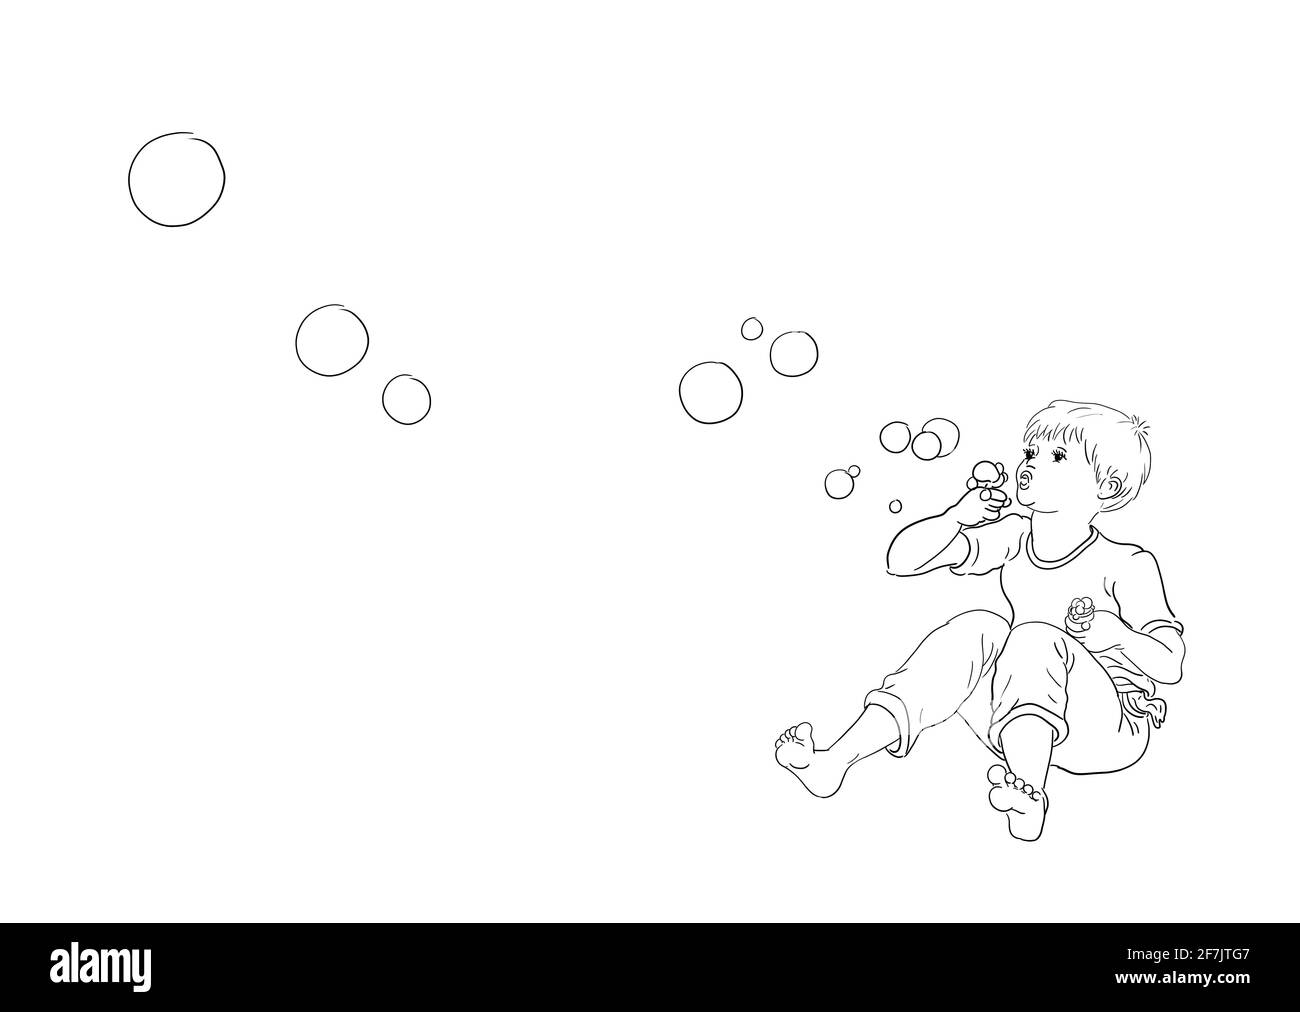 Ich liebe Seifenblasen Hintergrund weiß Junge sitzen gekreuzt barfuß Schläge Blasen Blasen Blasen Blasen fliegen durch die Luft Flip-Flops liegen Vor Stockfoto